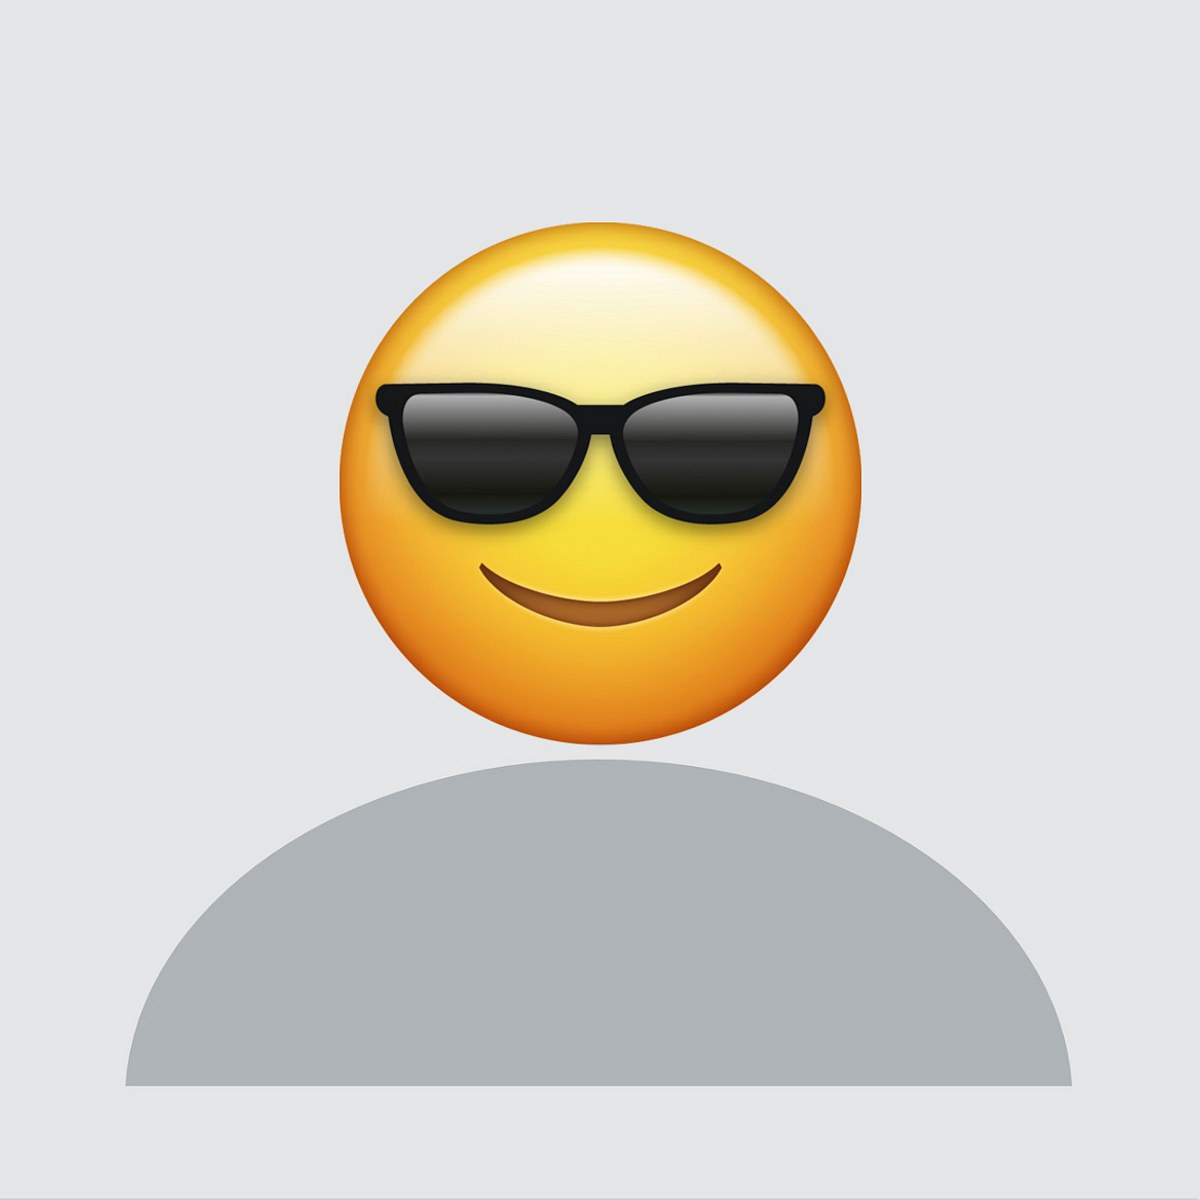 Profilbilder lustig: Pimpe dein Kein Foto verfügbar-Bild mit Emojis